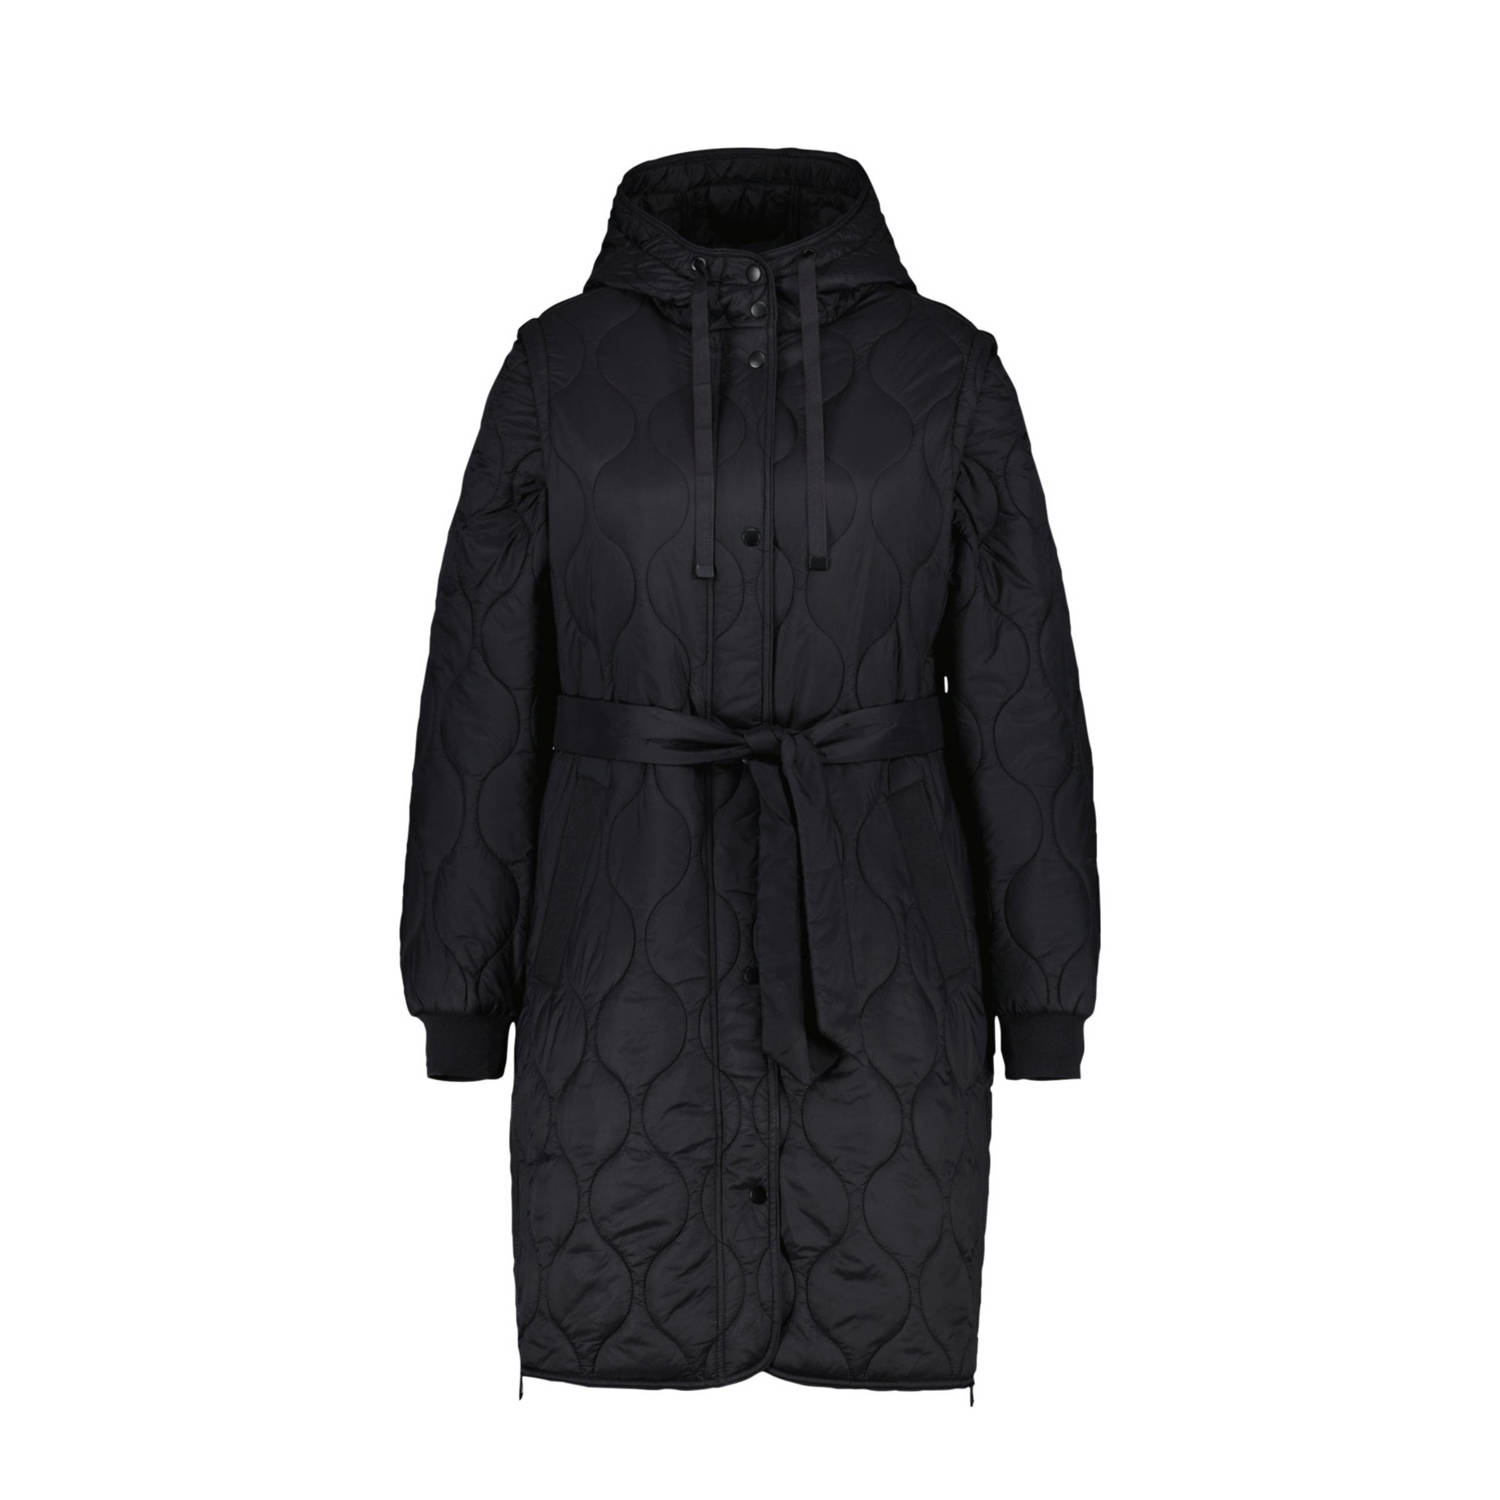 MS Mode gewatteerde jas met ceintuur zwart